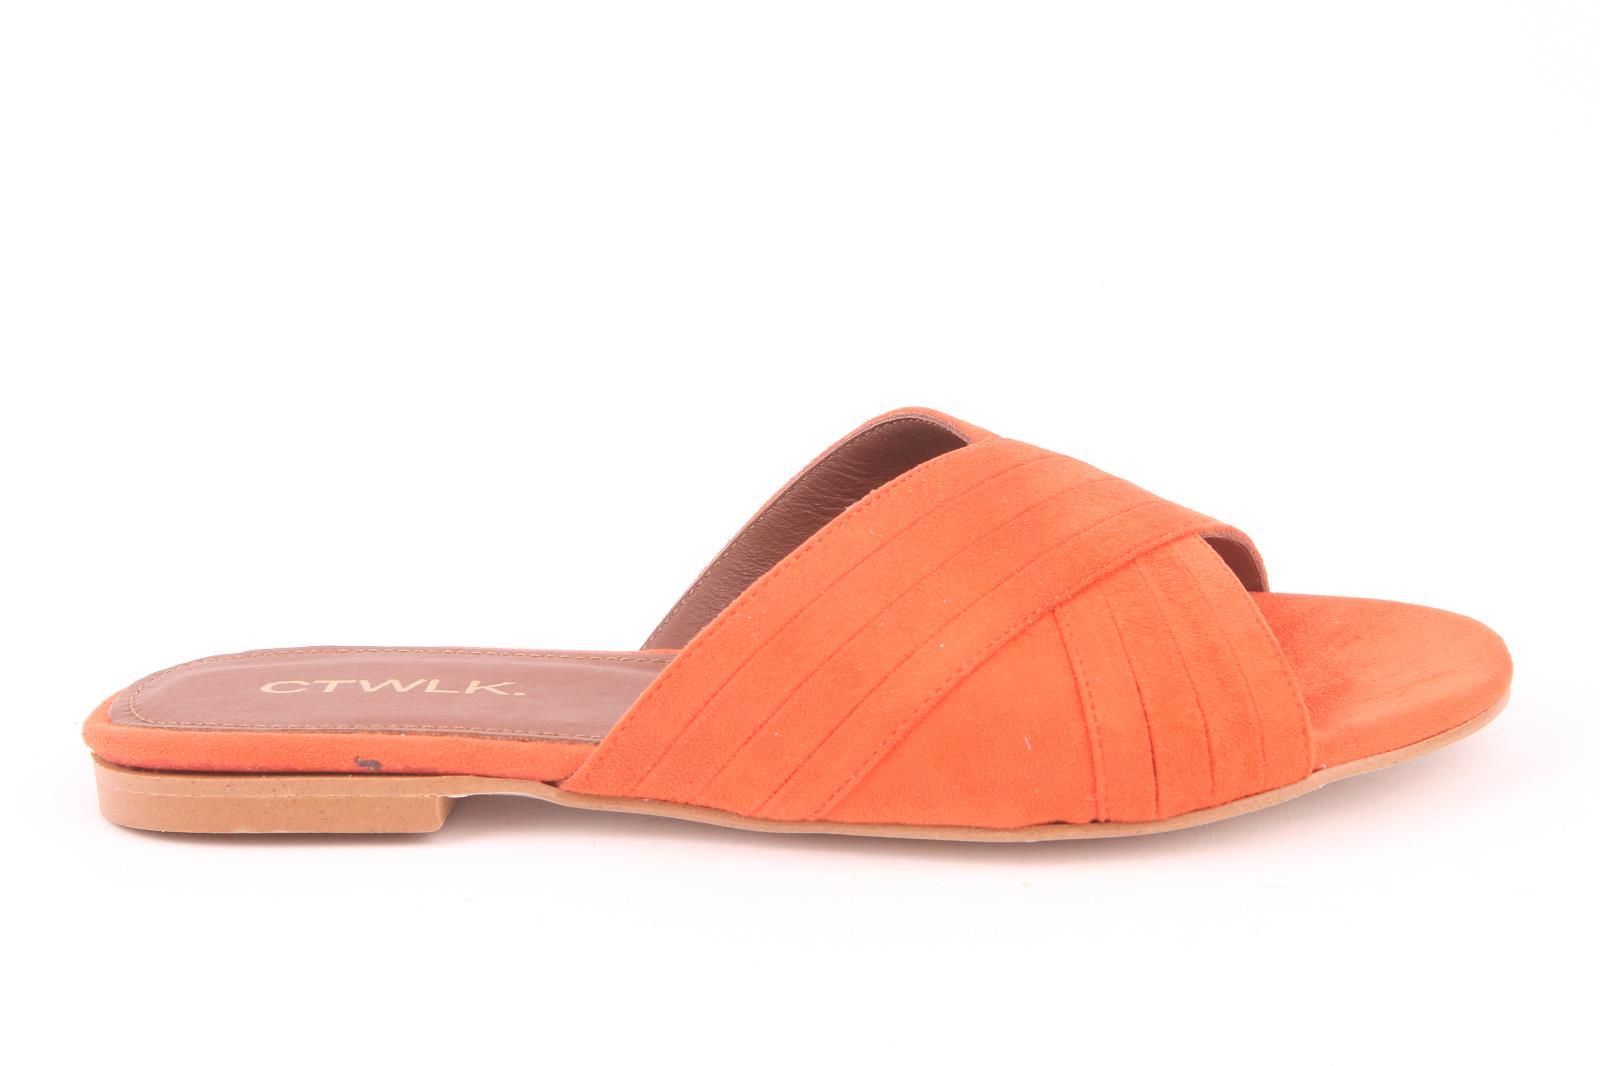 Catwalk dames slipper suede orange (Laura).